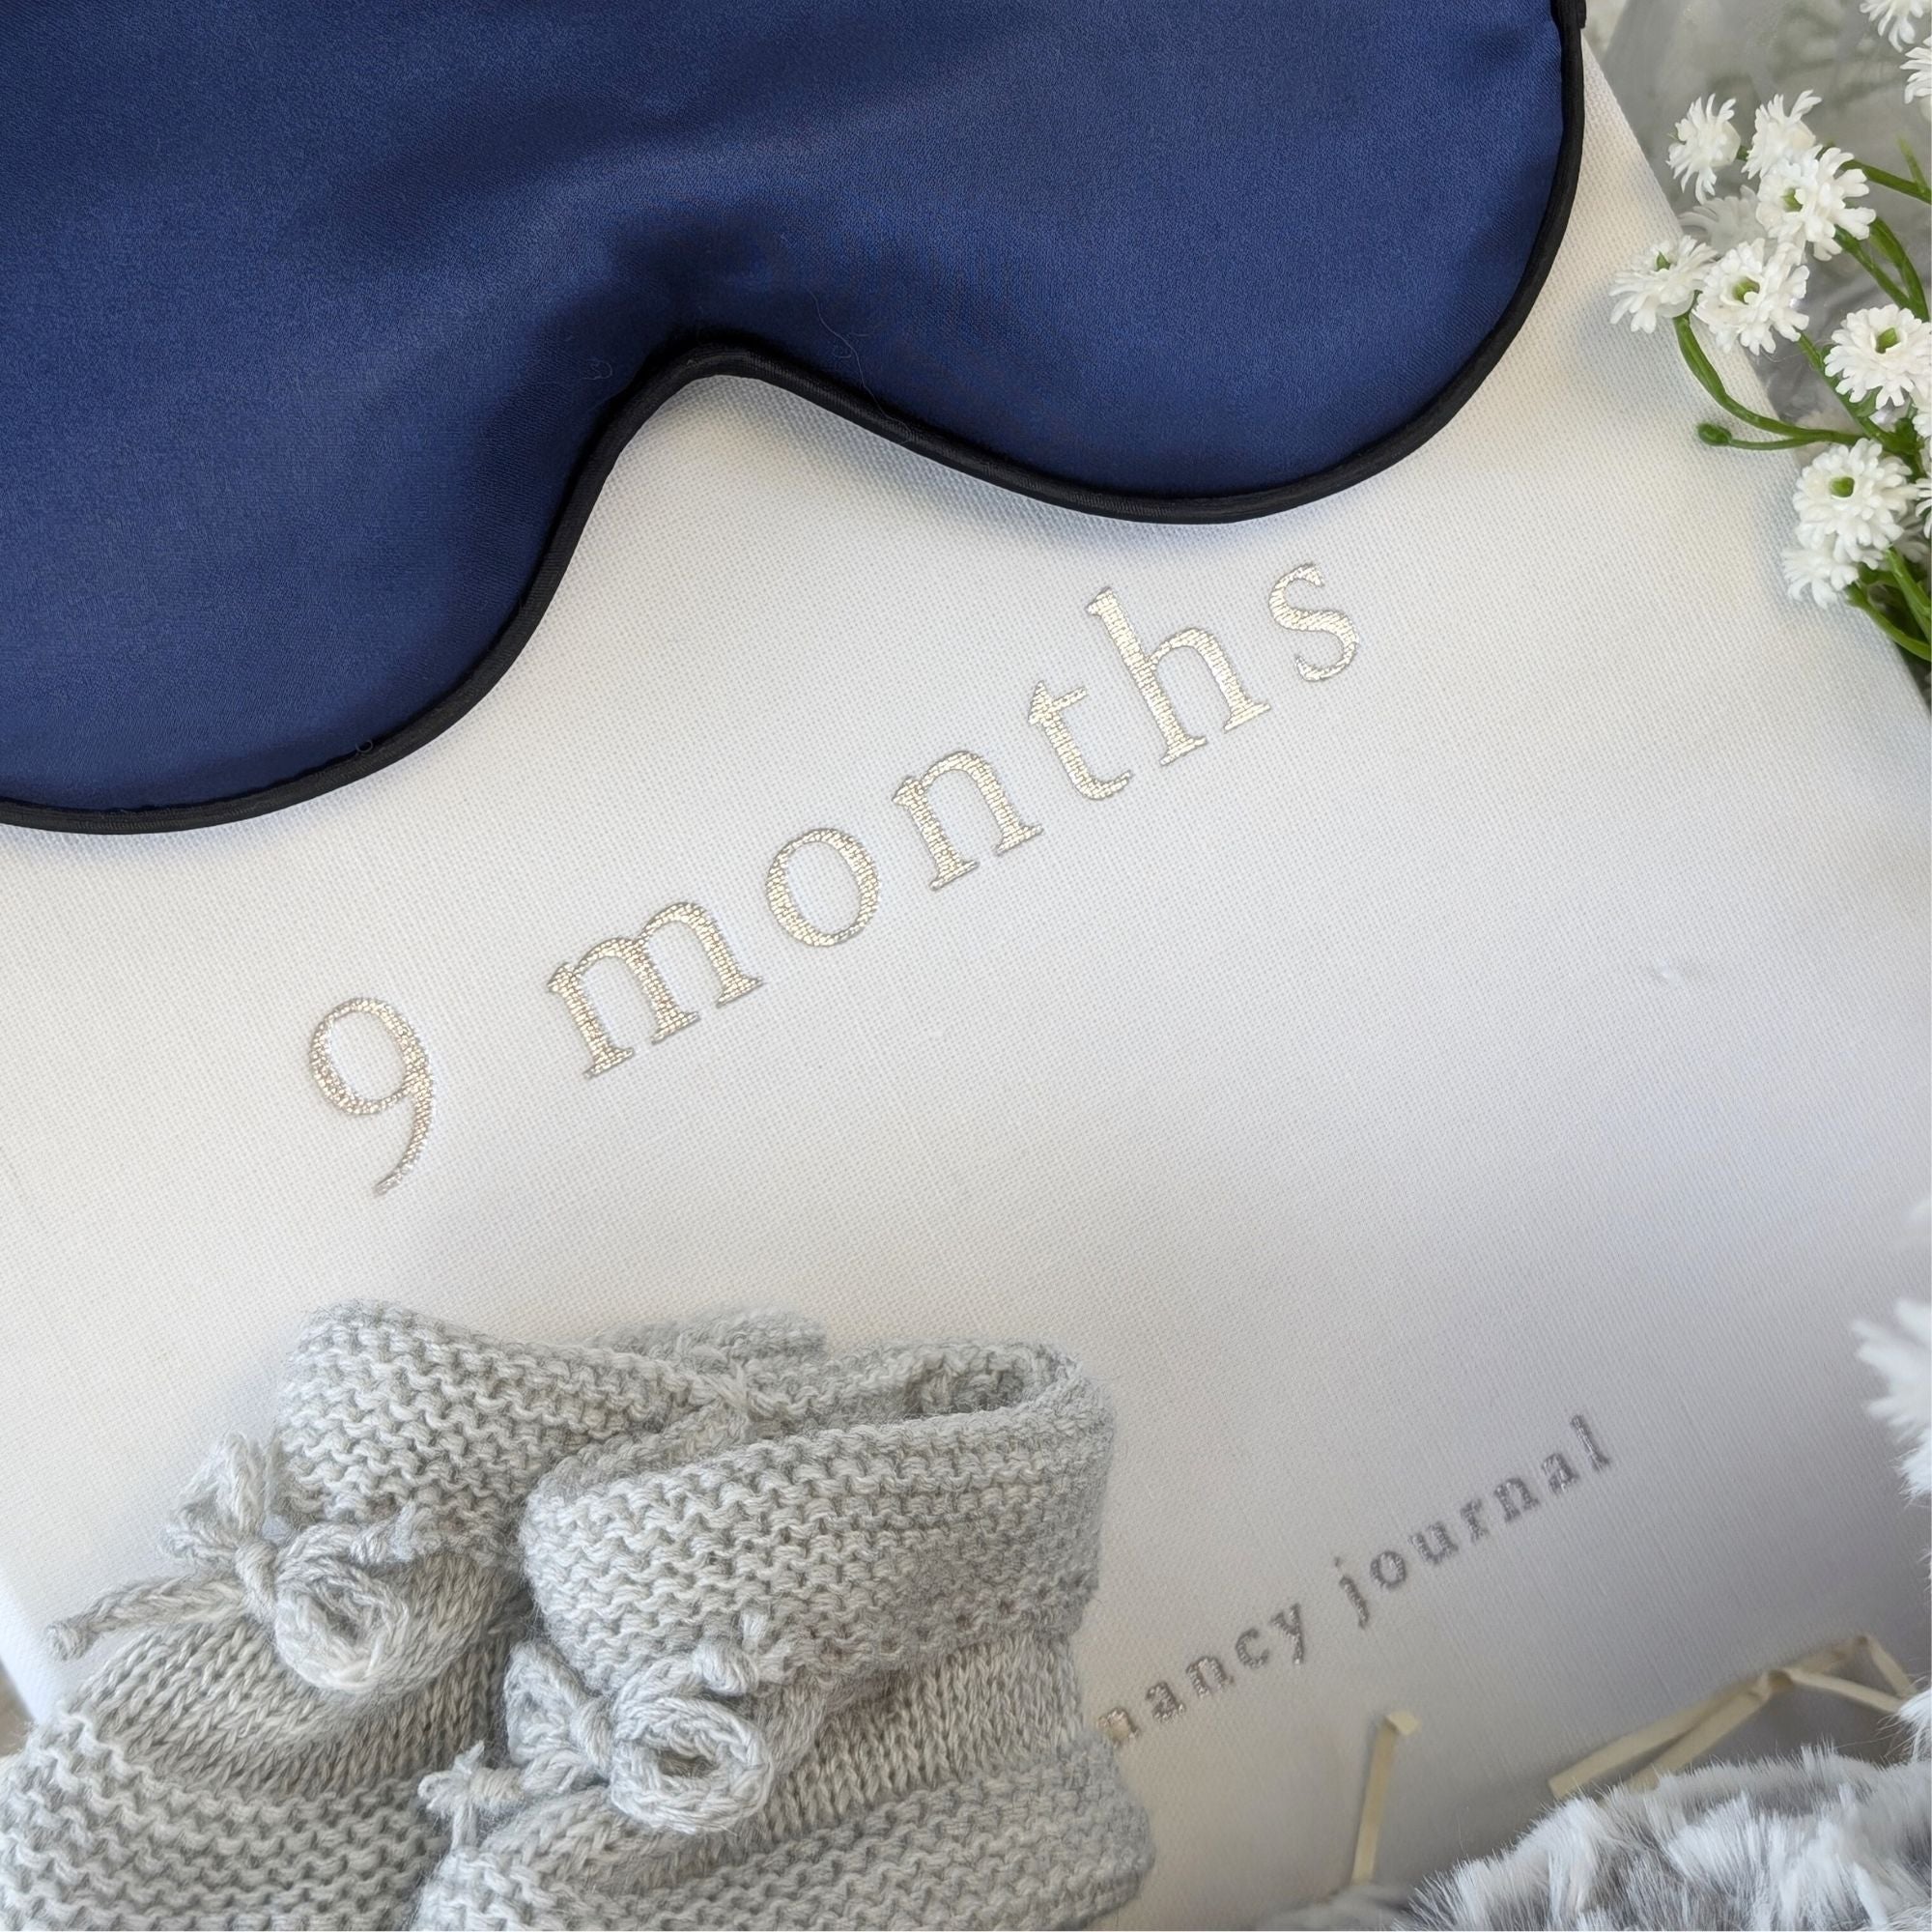 nine months pregnancy journal